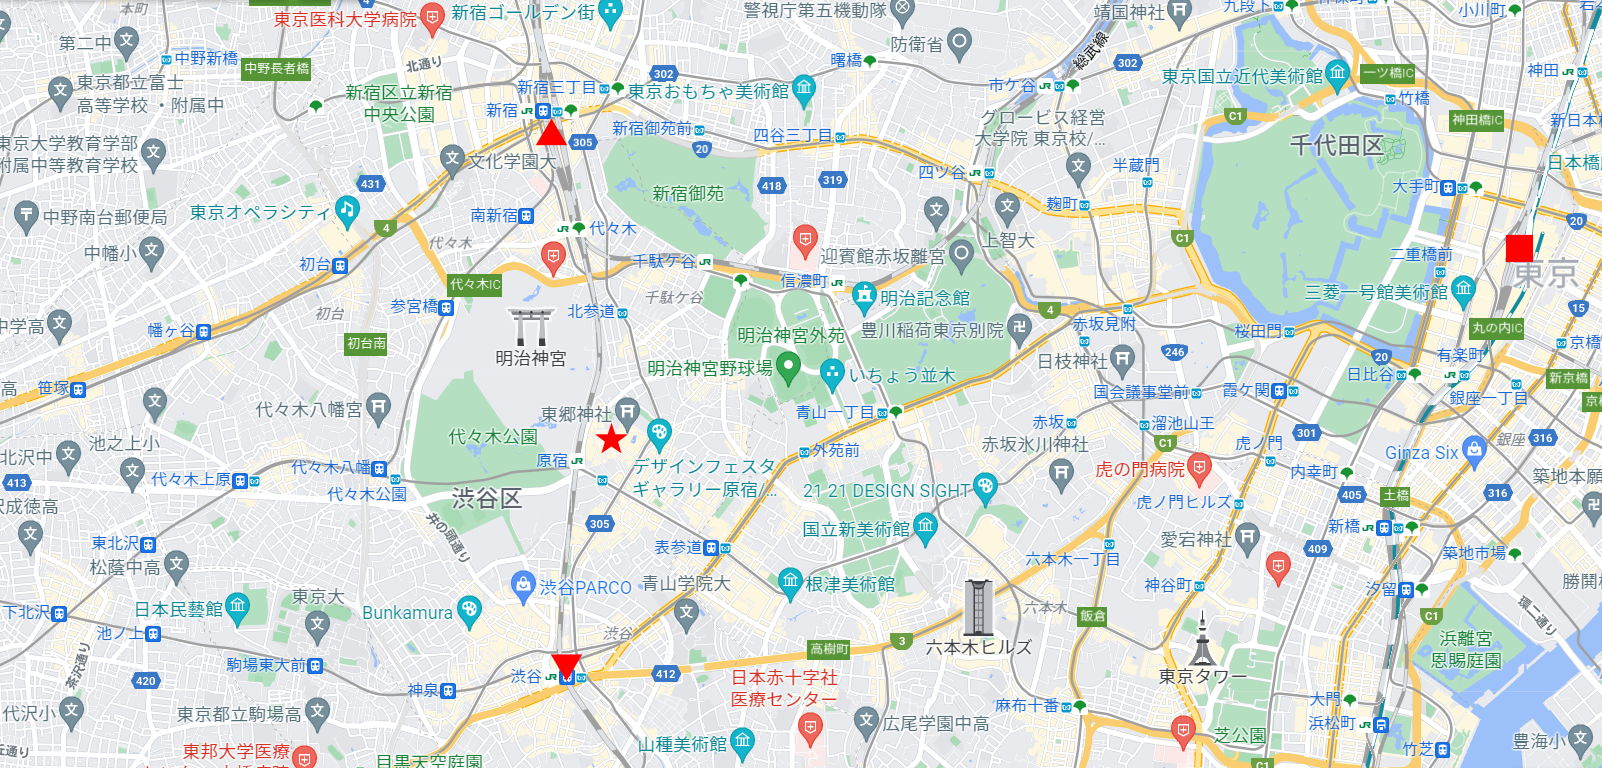 東京「原宿・竹下通りのスイーツ」2021晩秋-1001